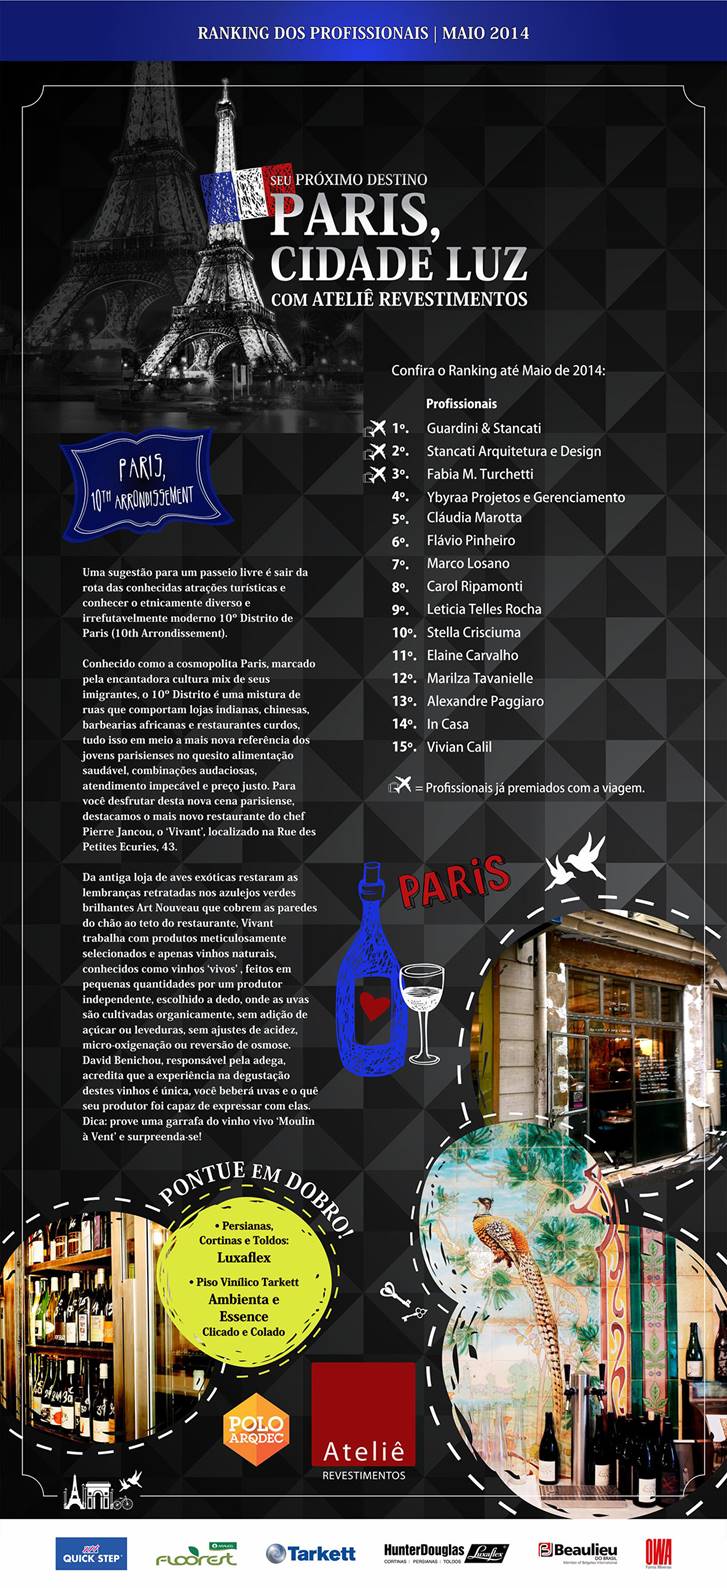 Confira o ranking campanha de Paris no Ateliê de Campinas